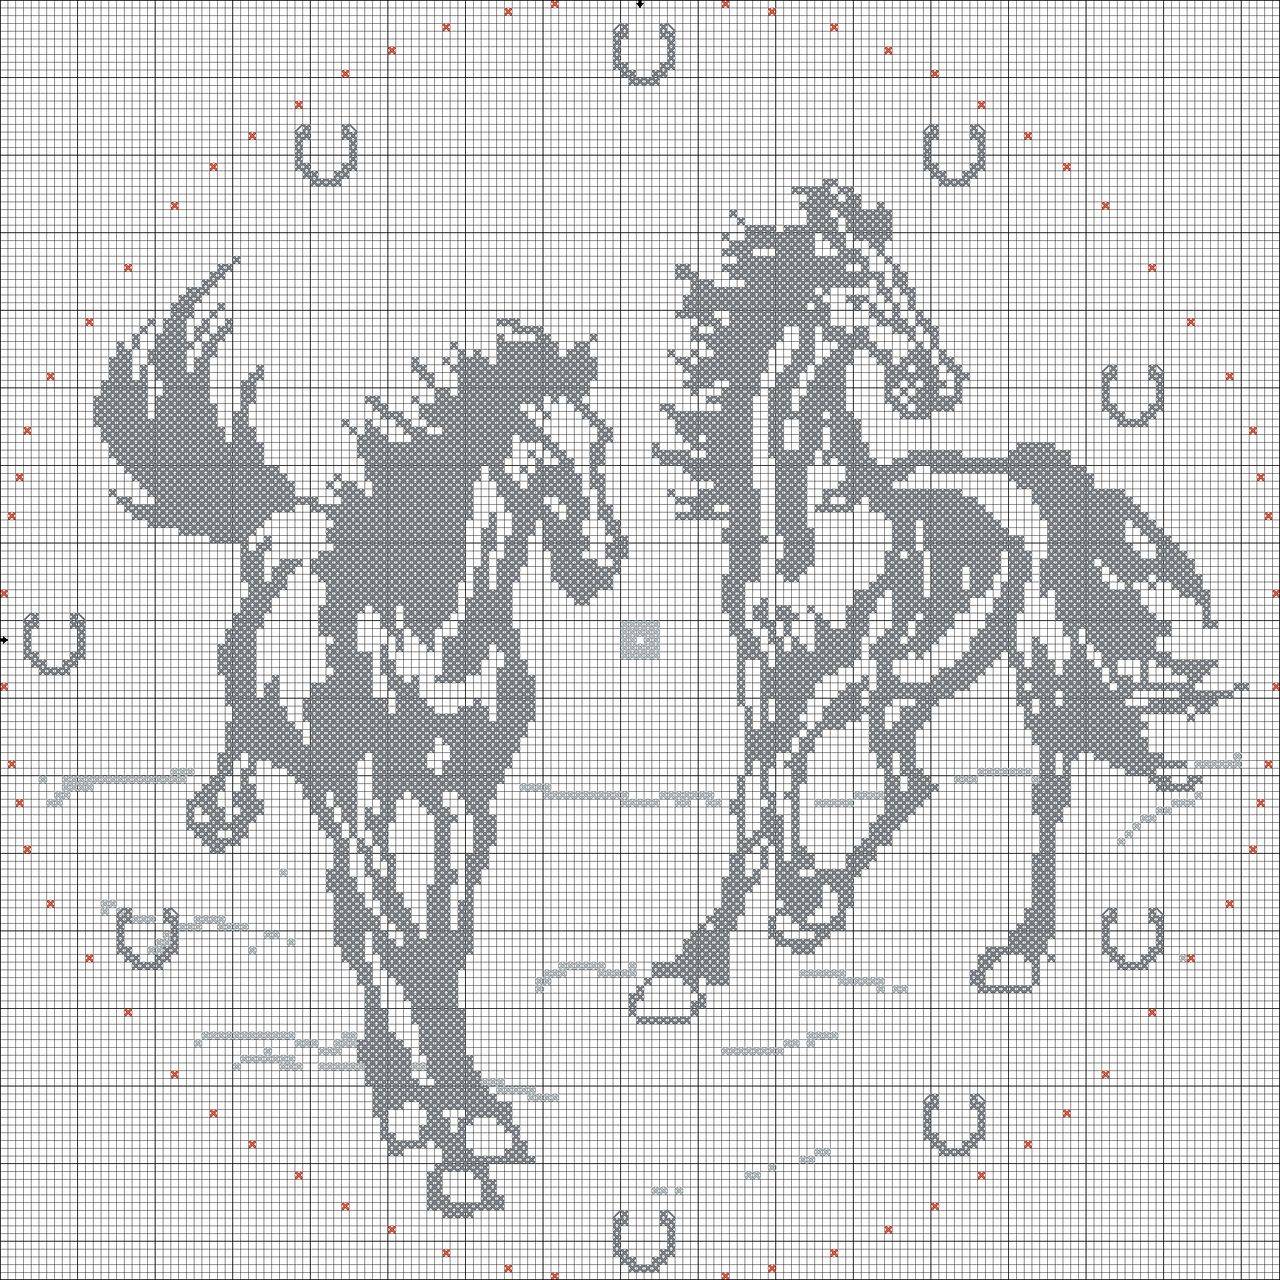 Вышивка с лошадьми крестом: схемы с белыми лошадками и девушкой, наборы